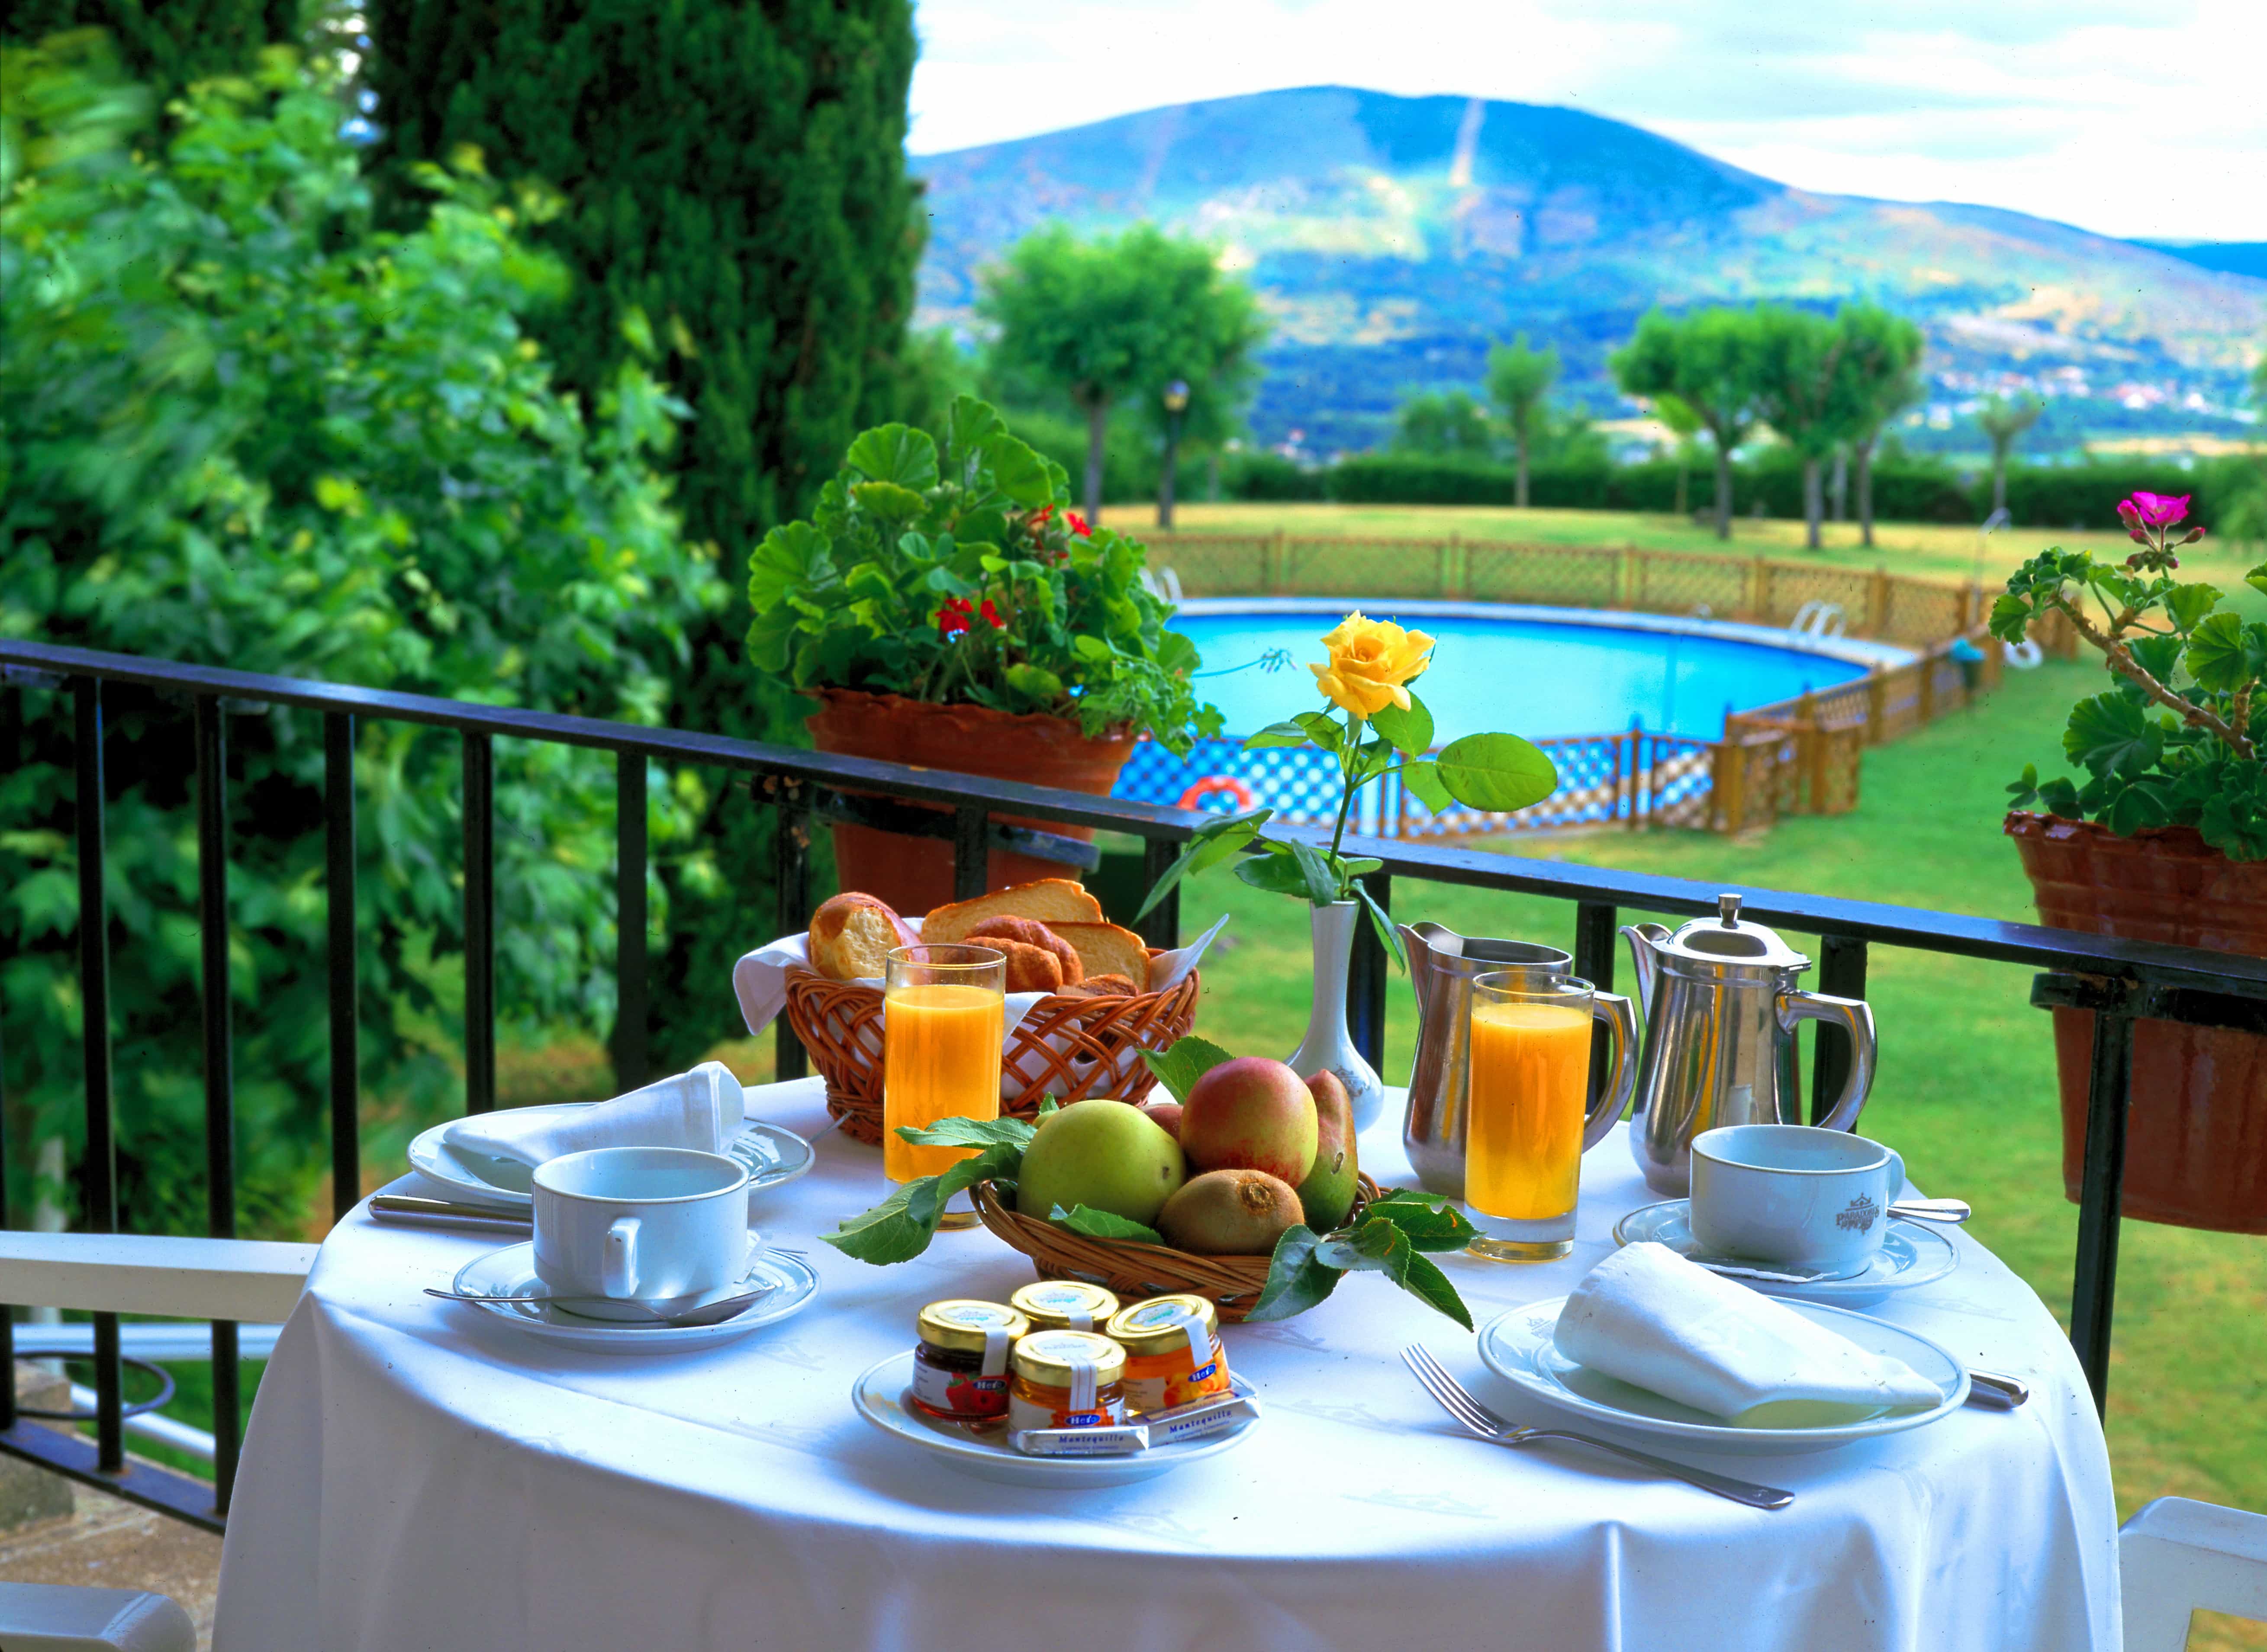 Desayuno preparado en mesa exterior con vista a prados verdes con las montañas de Verín al fondo